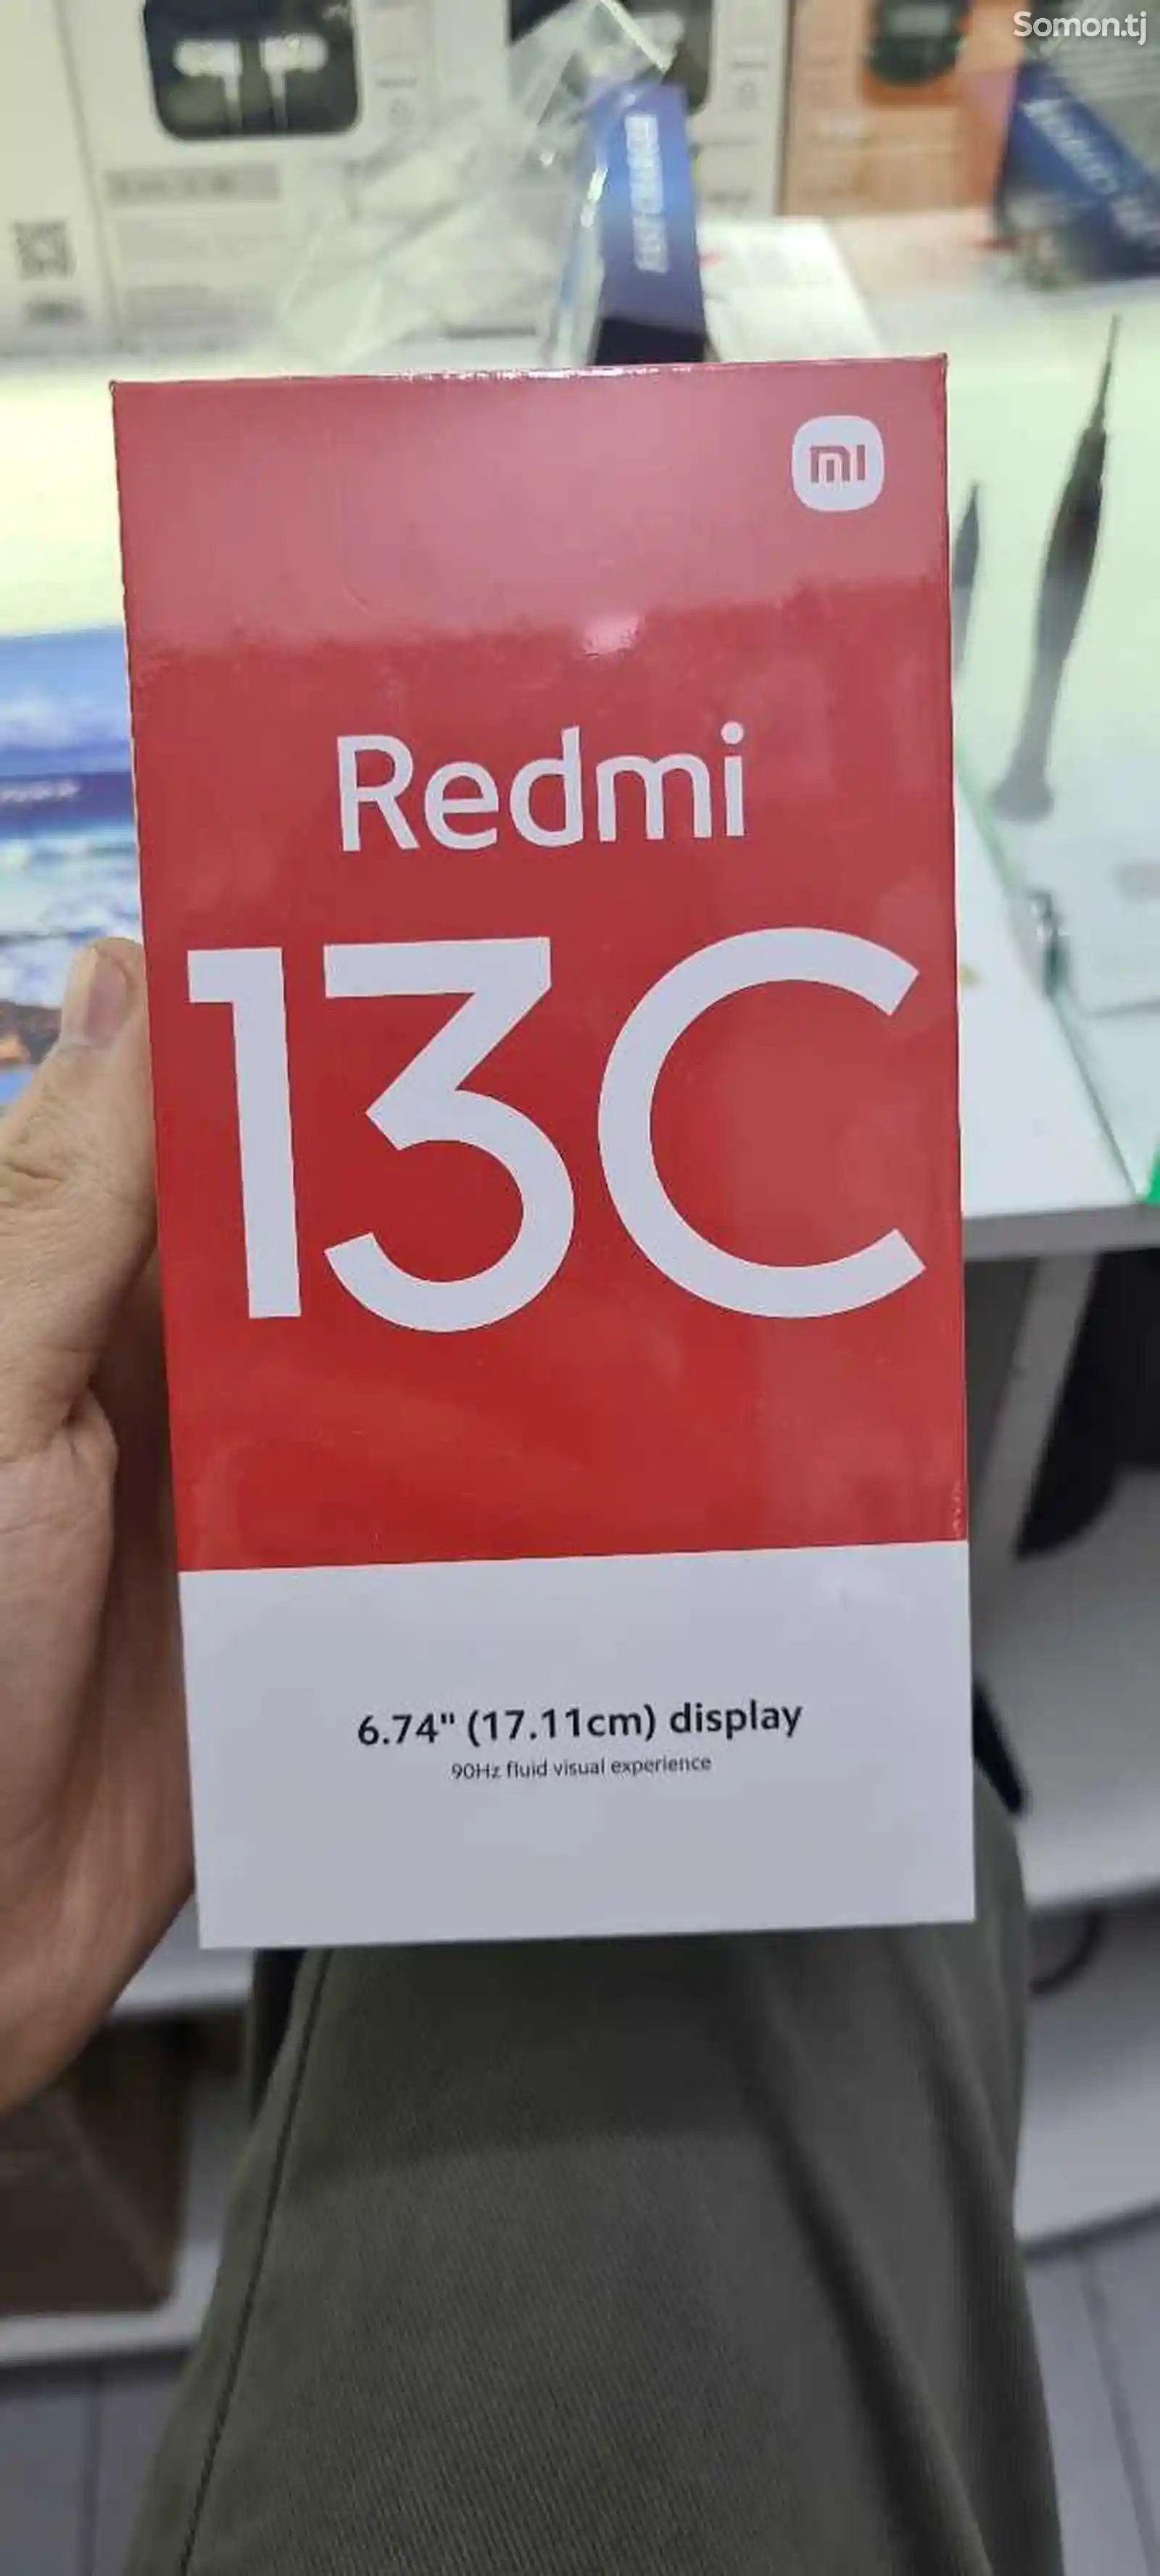 Xiaomi redmi 13c-1